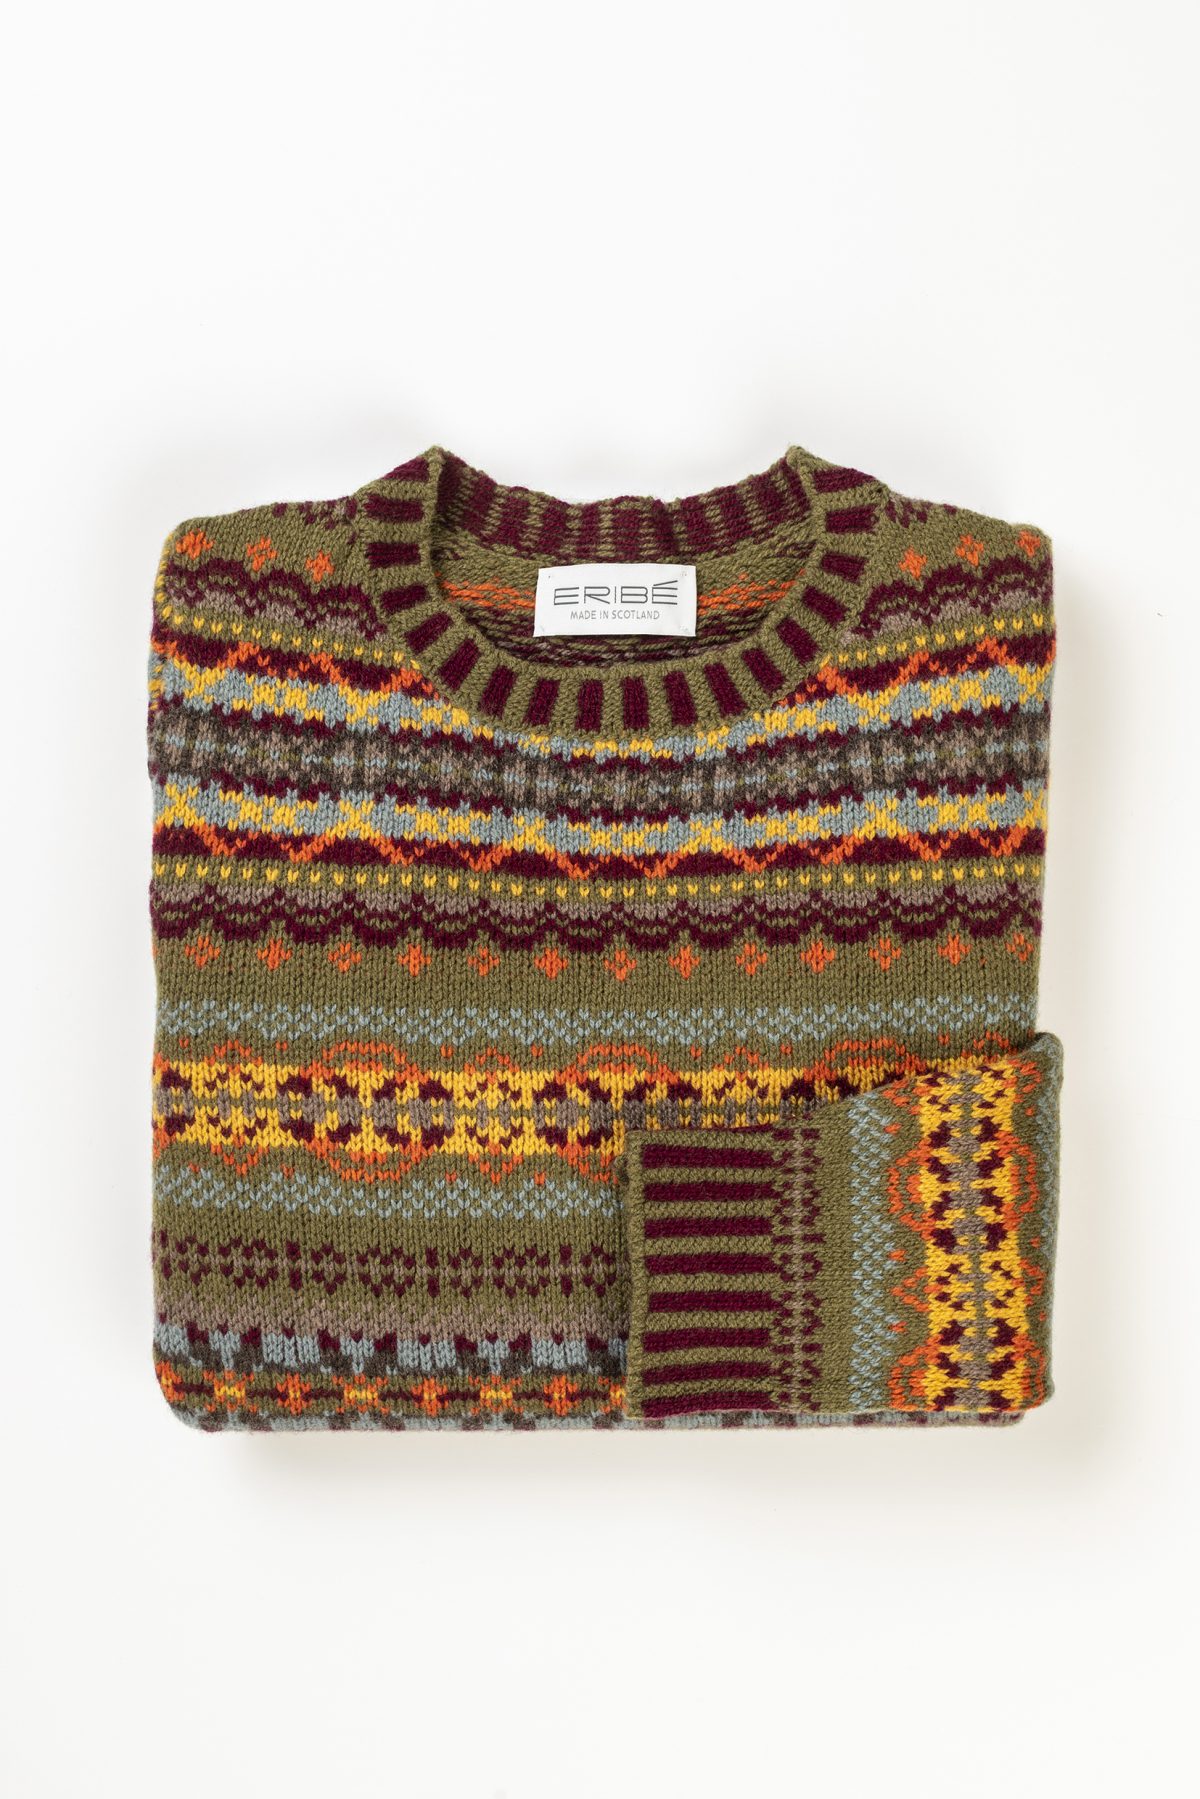 Eribe Knitwear – Ladies Kinross Sweater – Rowan – The Jail Dornoch